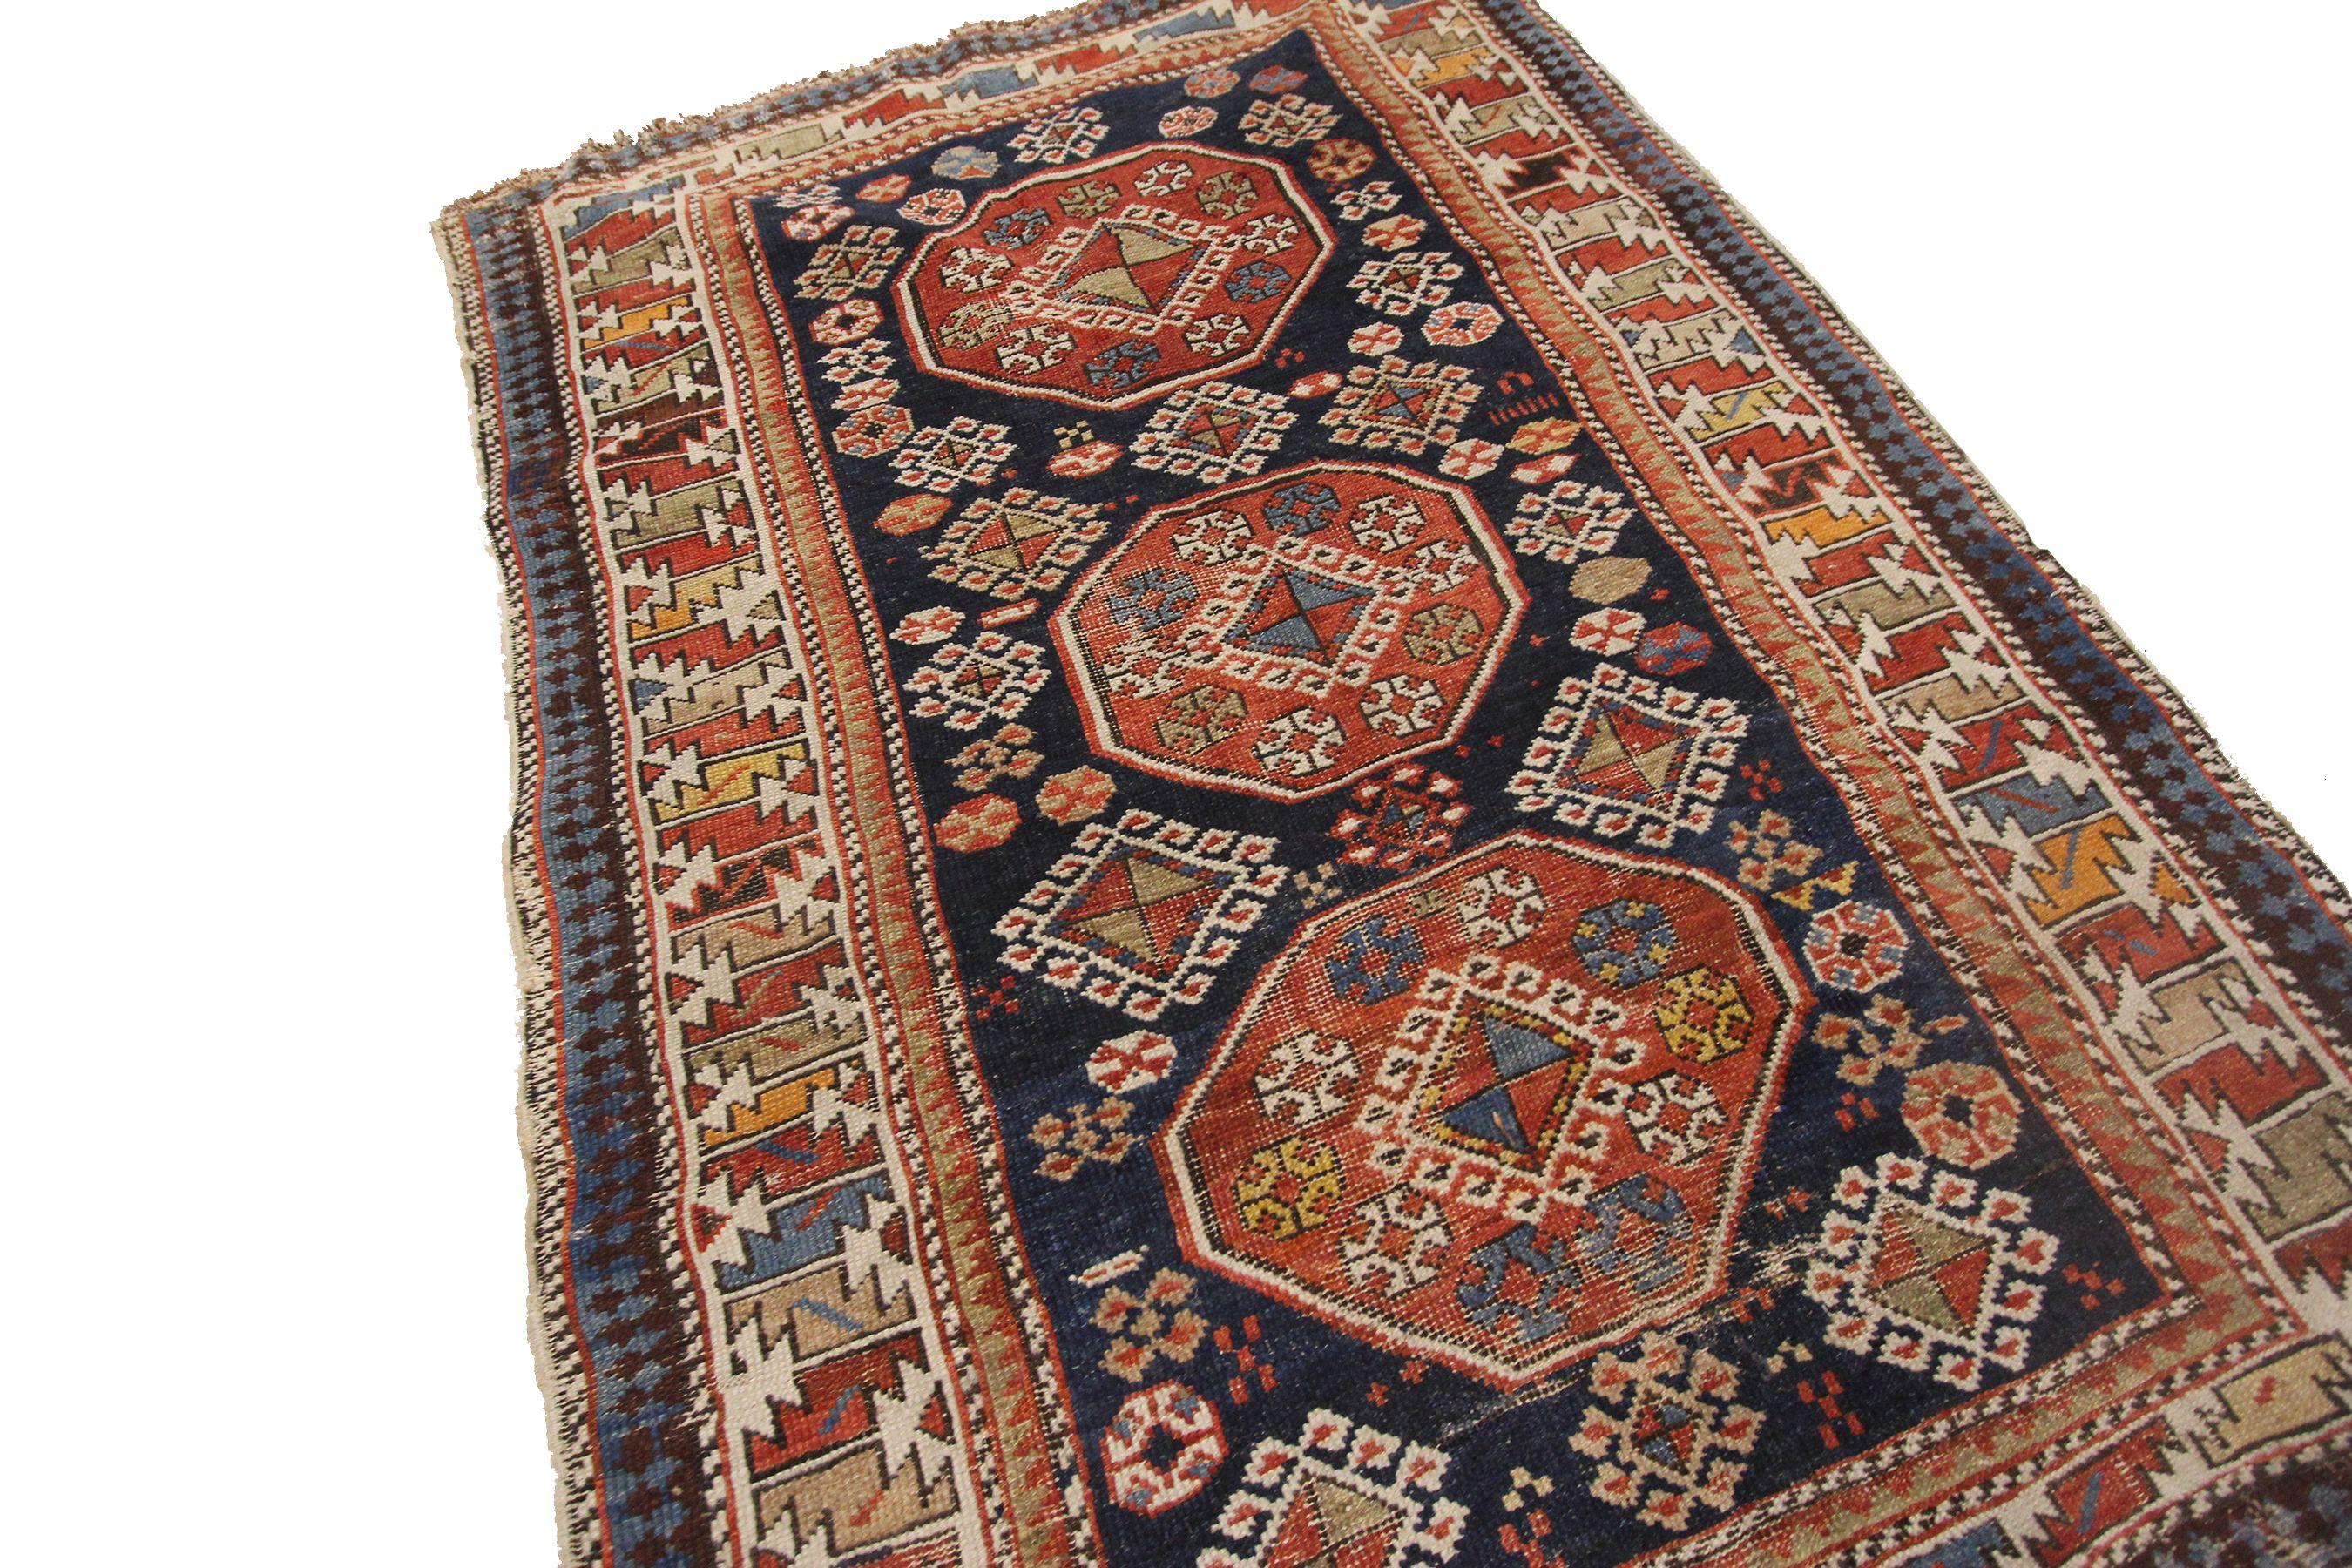 Authentic Antique Caucasian Shirvan rug Geometric 

Blue

3'3